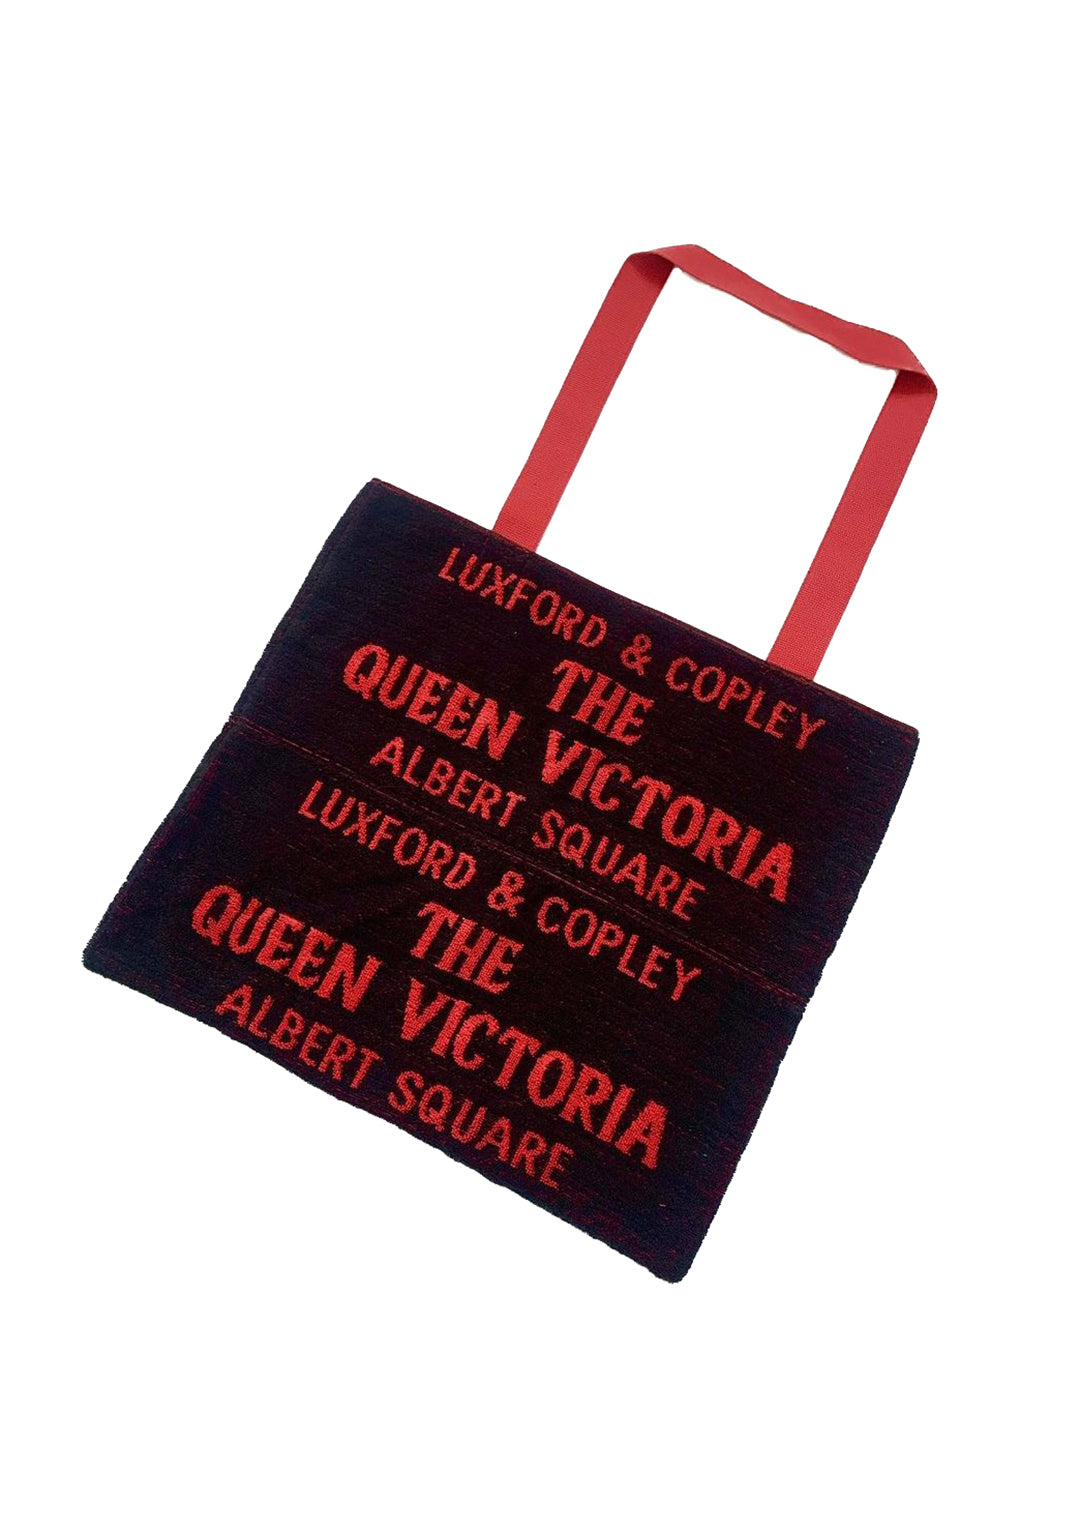 Queen Vic Beer Towel Tote